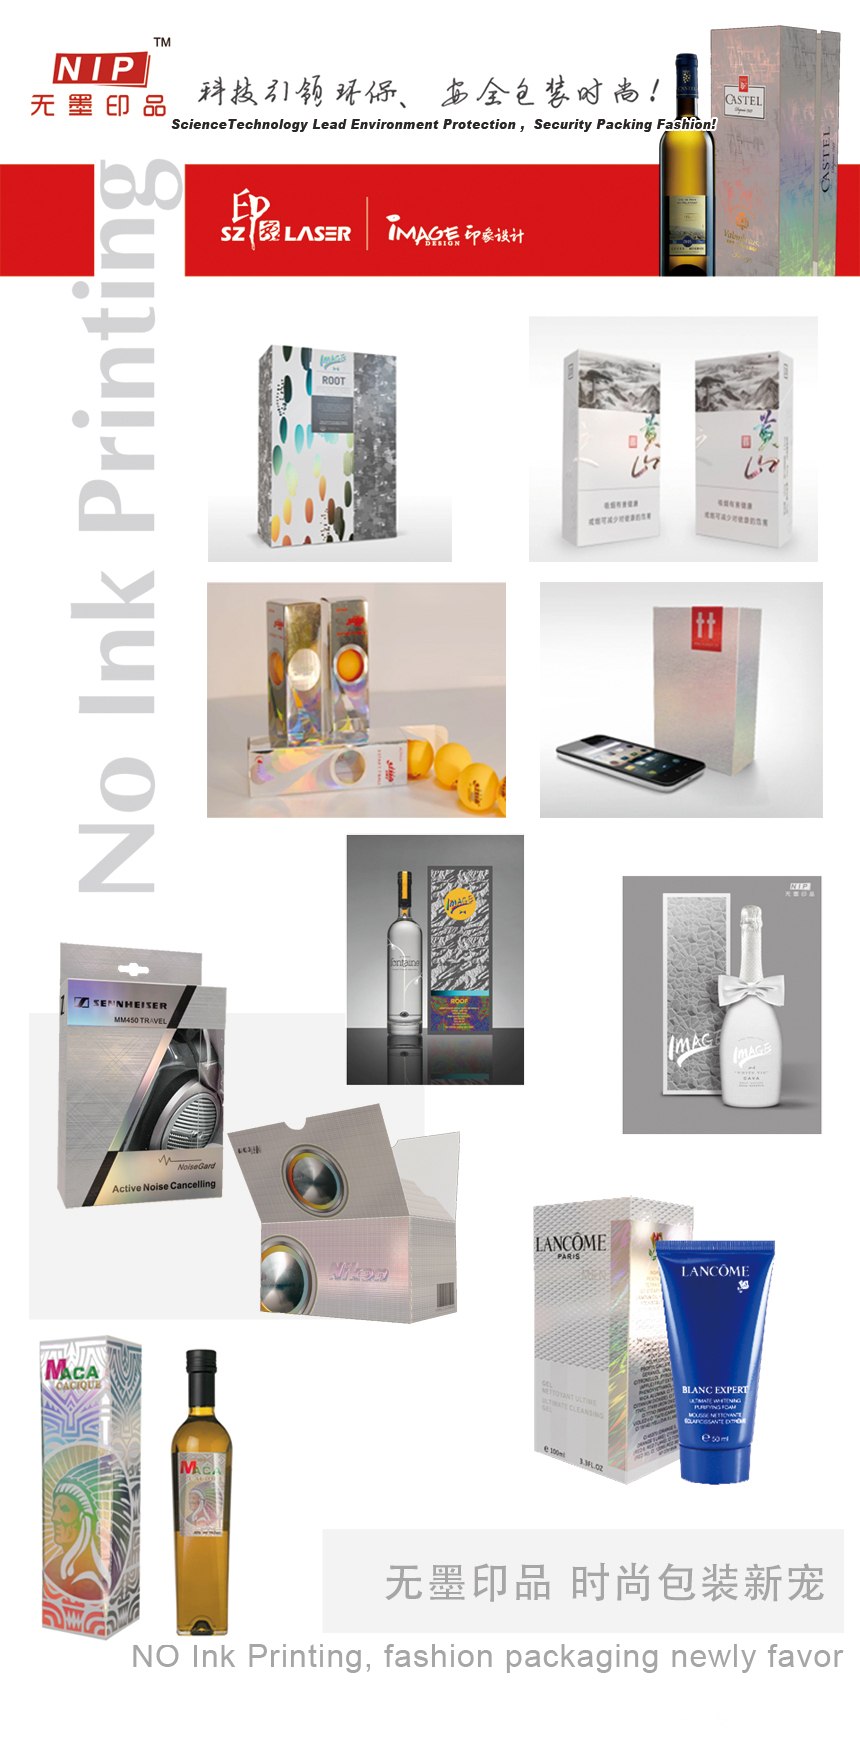 NIP packaging boxes Show- Suzhou Image